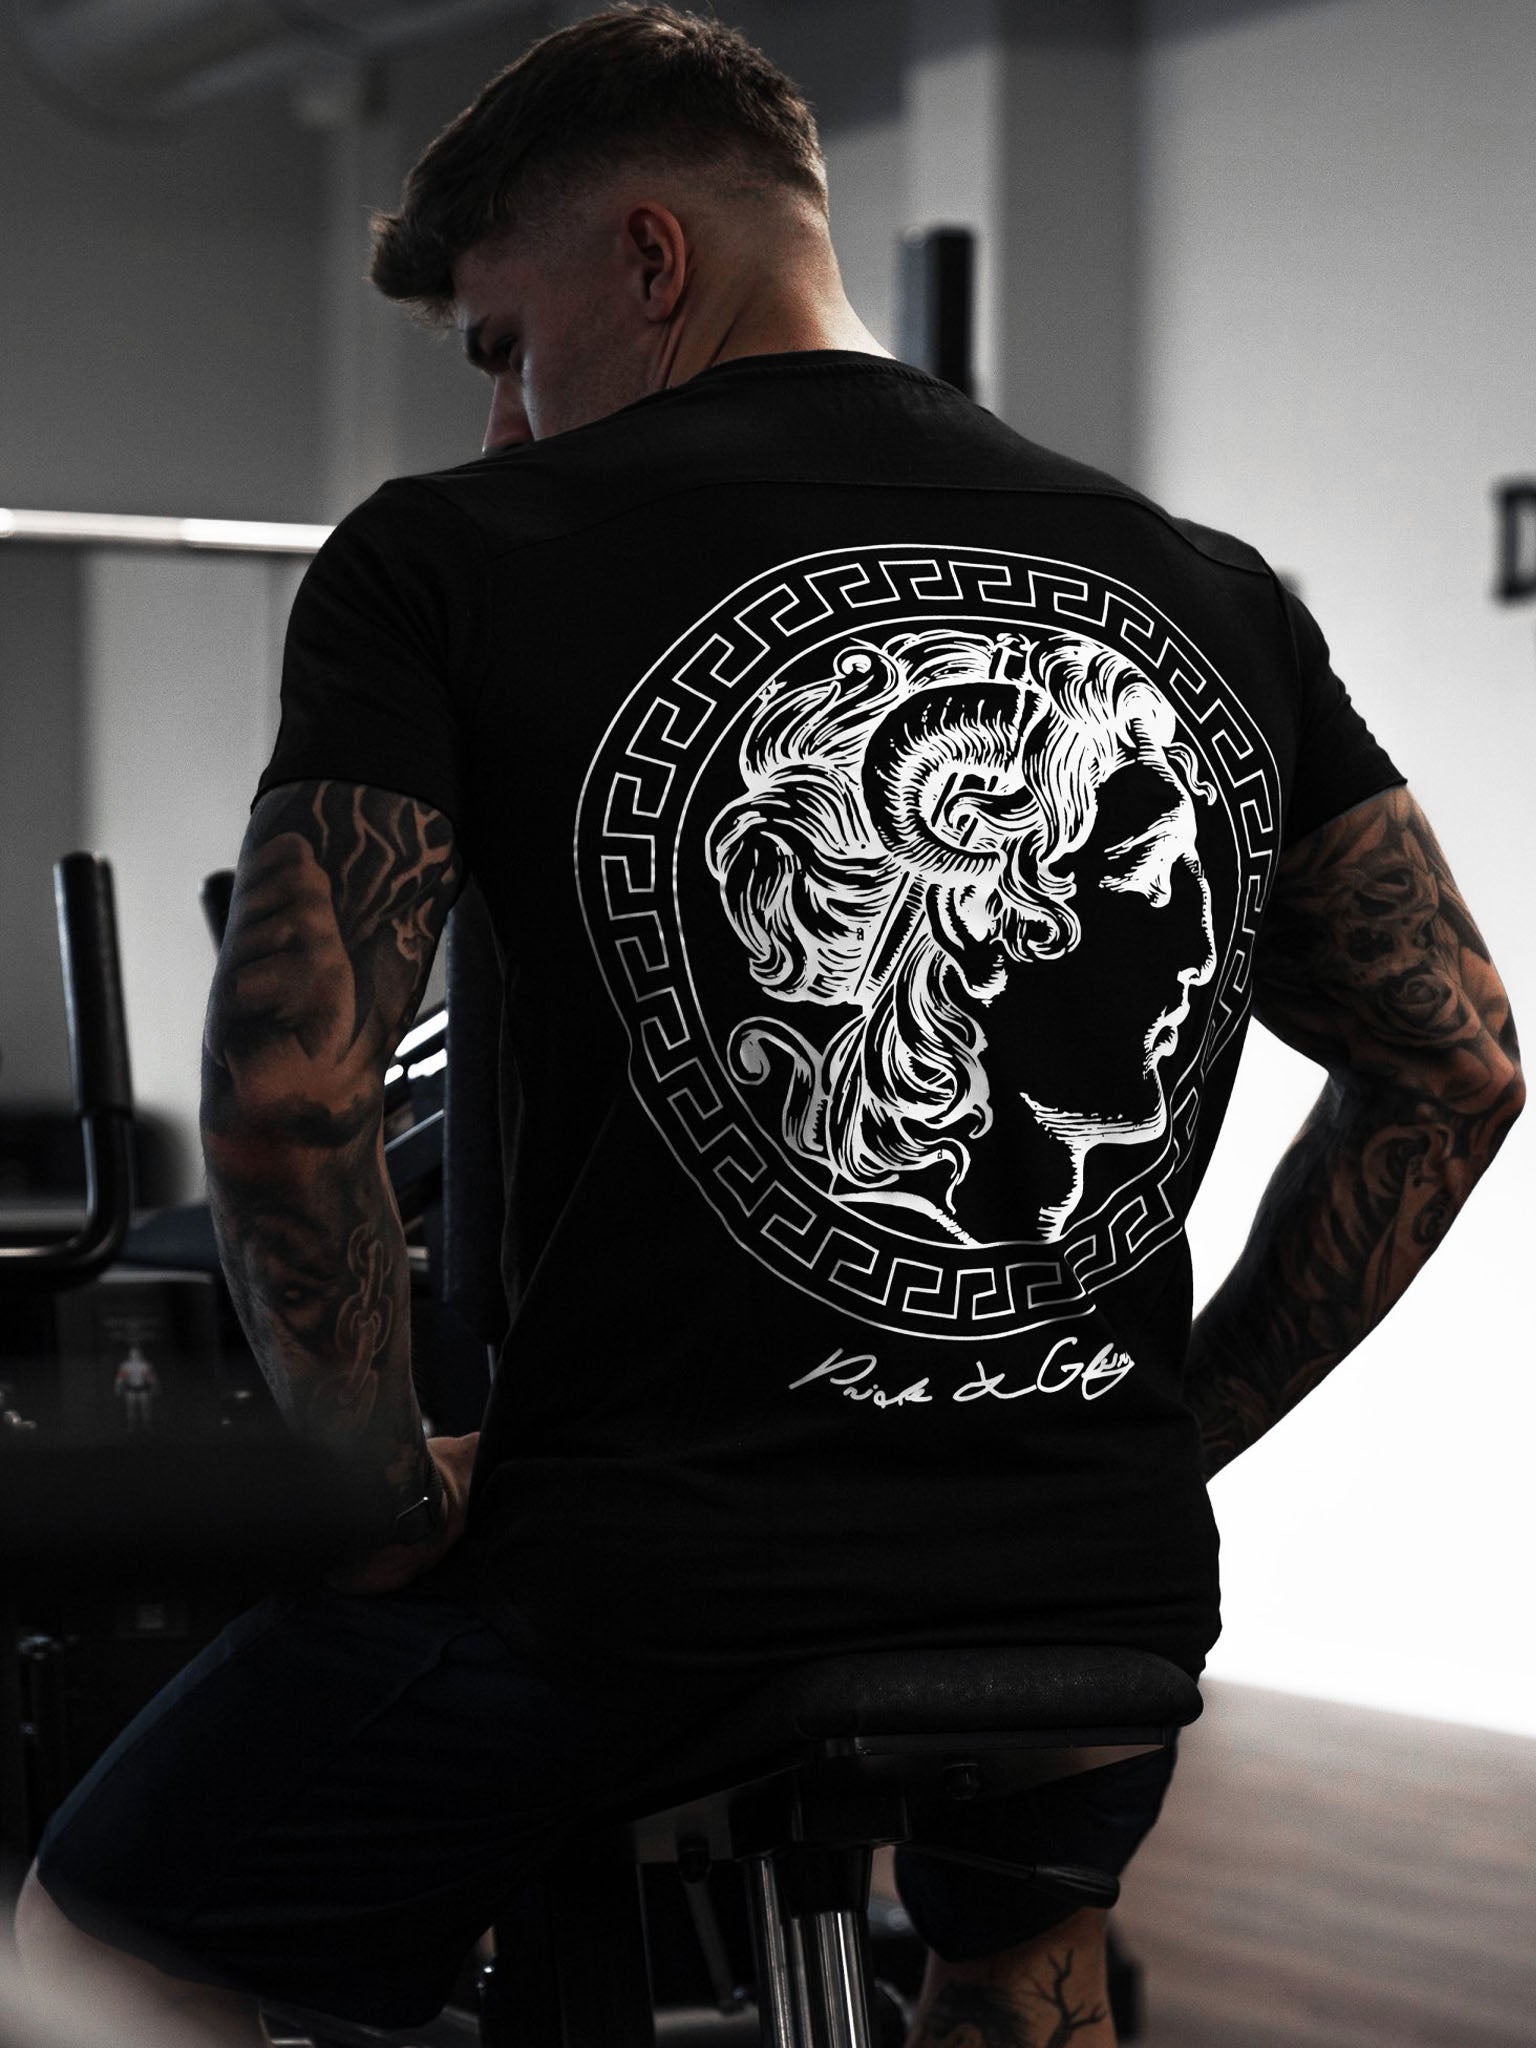 Stilvolles schwarzes T-Shirt von Gym Generation, ideal für jede Situation, mit epischem Motiv.